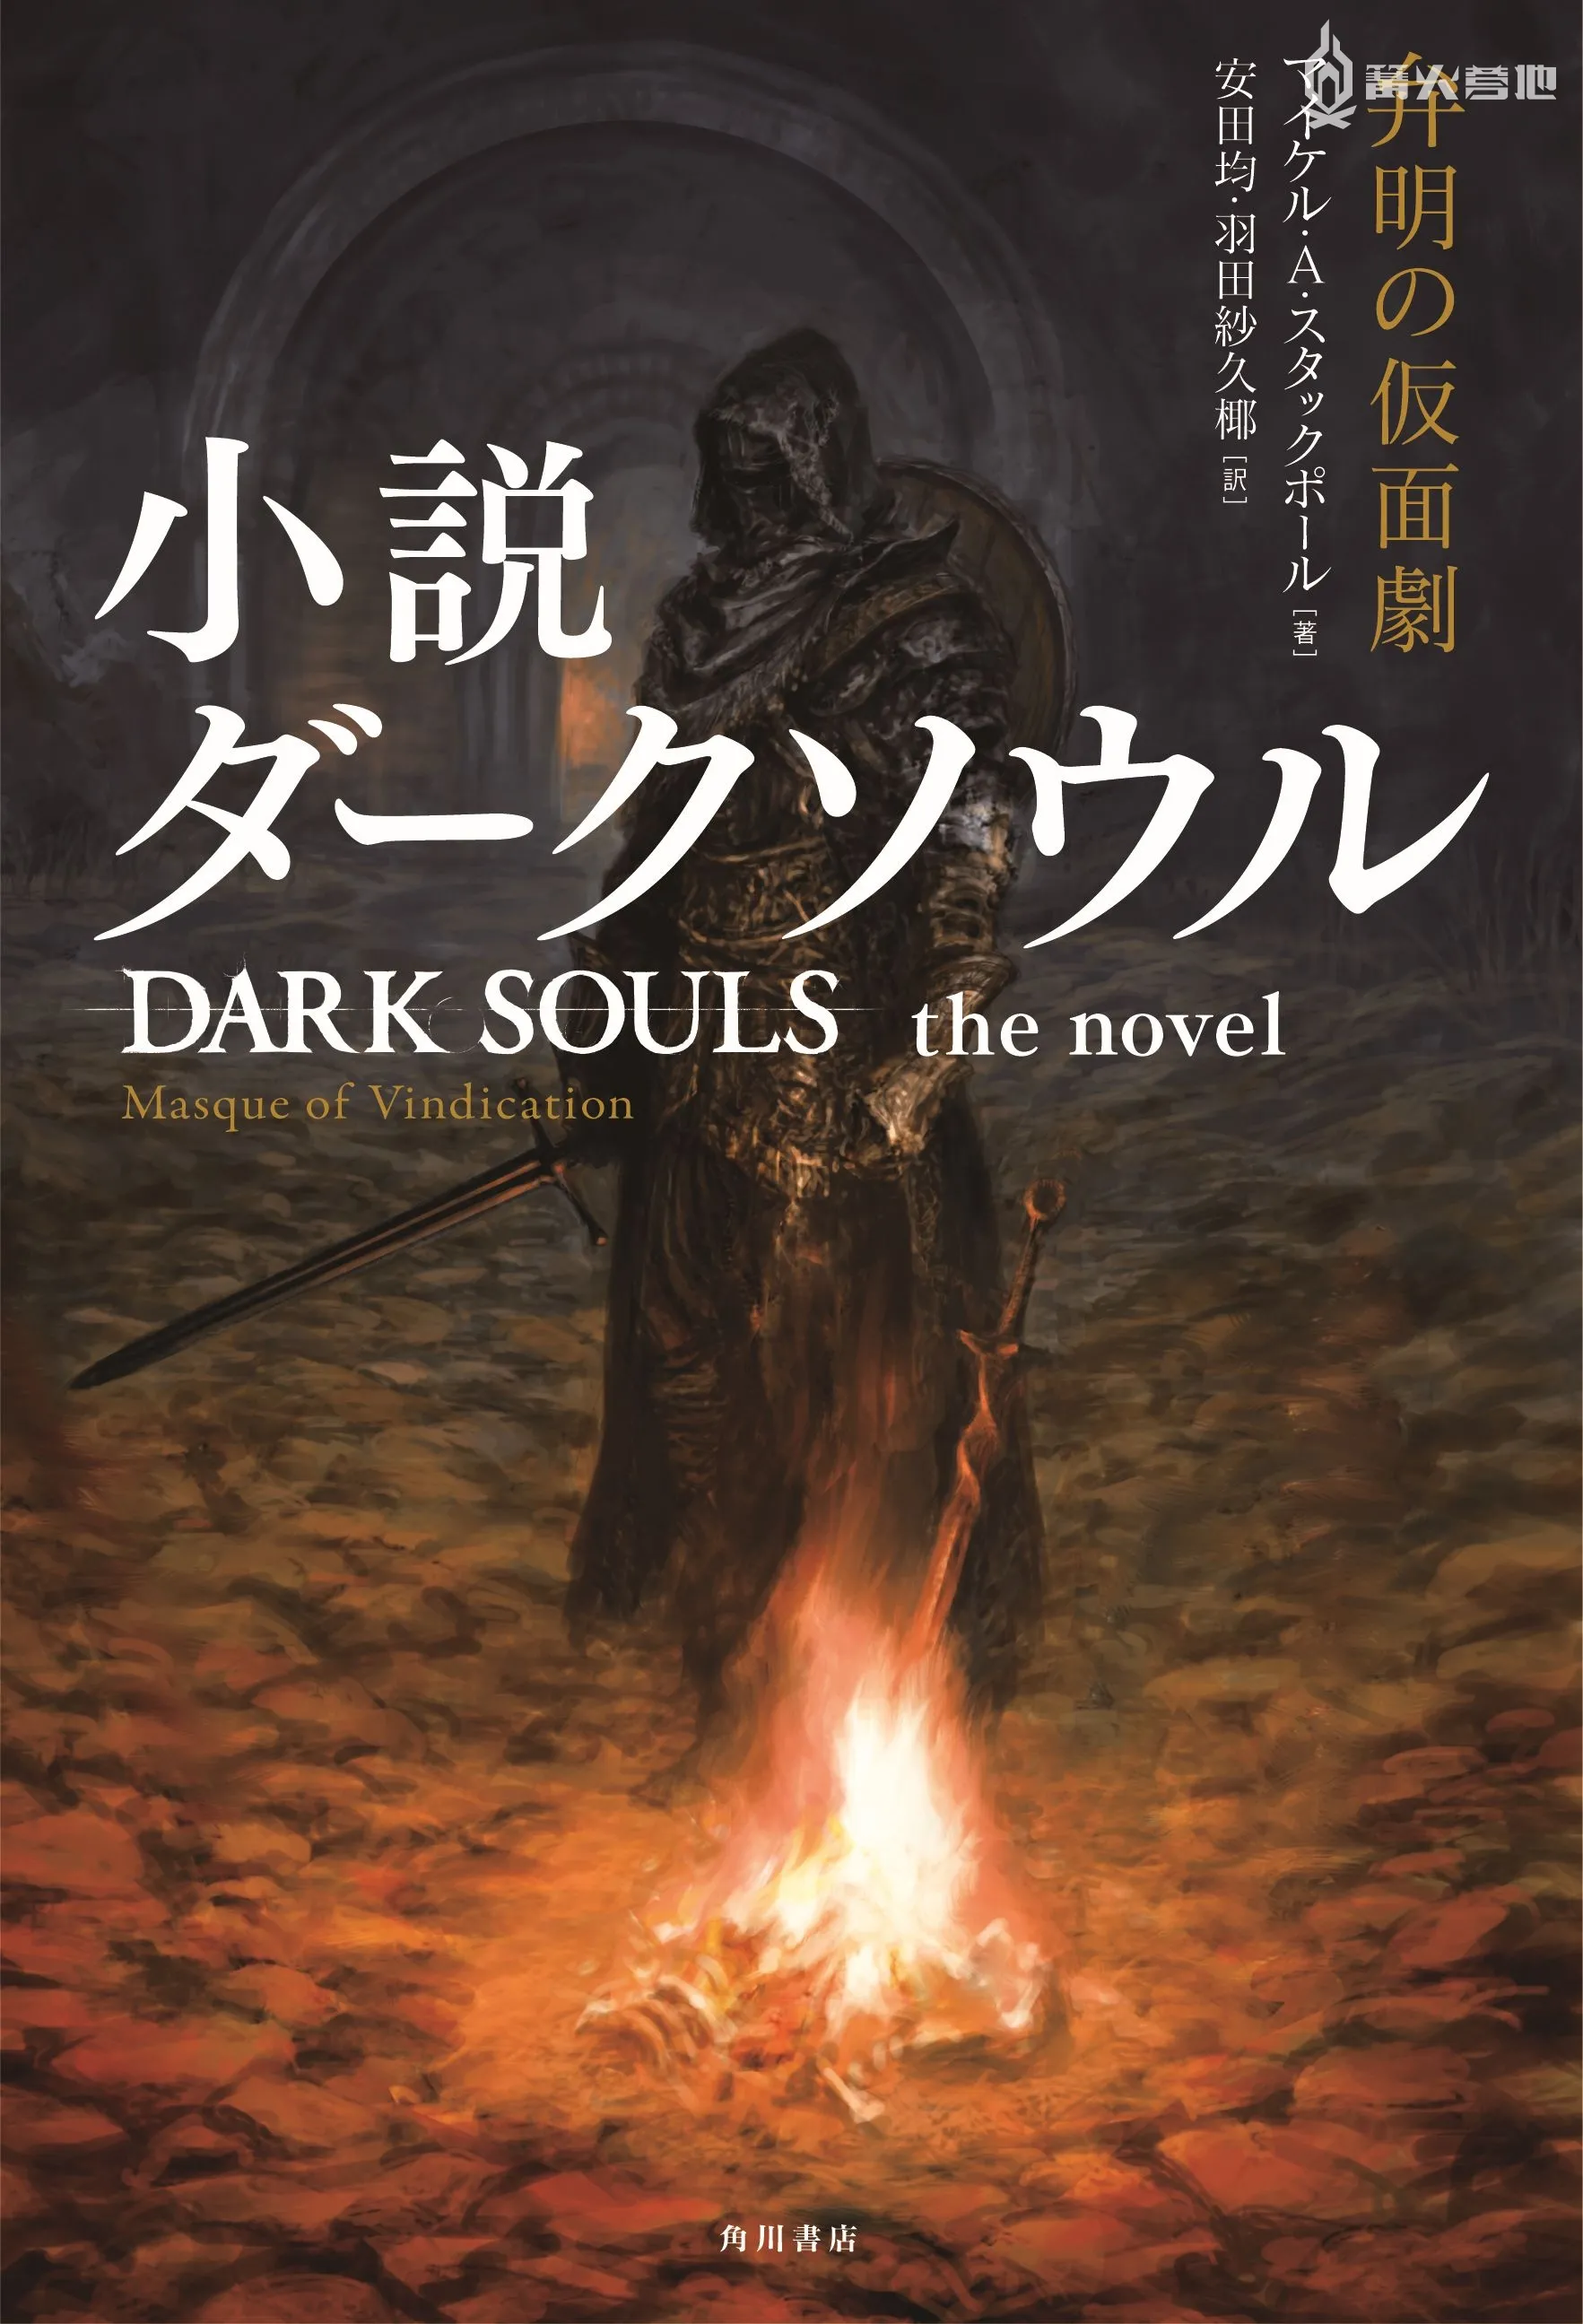 角川將推出《黑暗靈魂》系列遊戲改編的原創小說